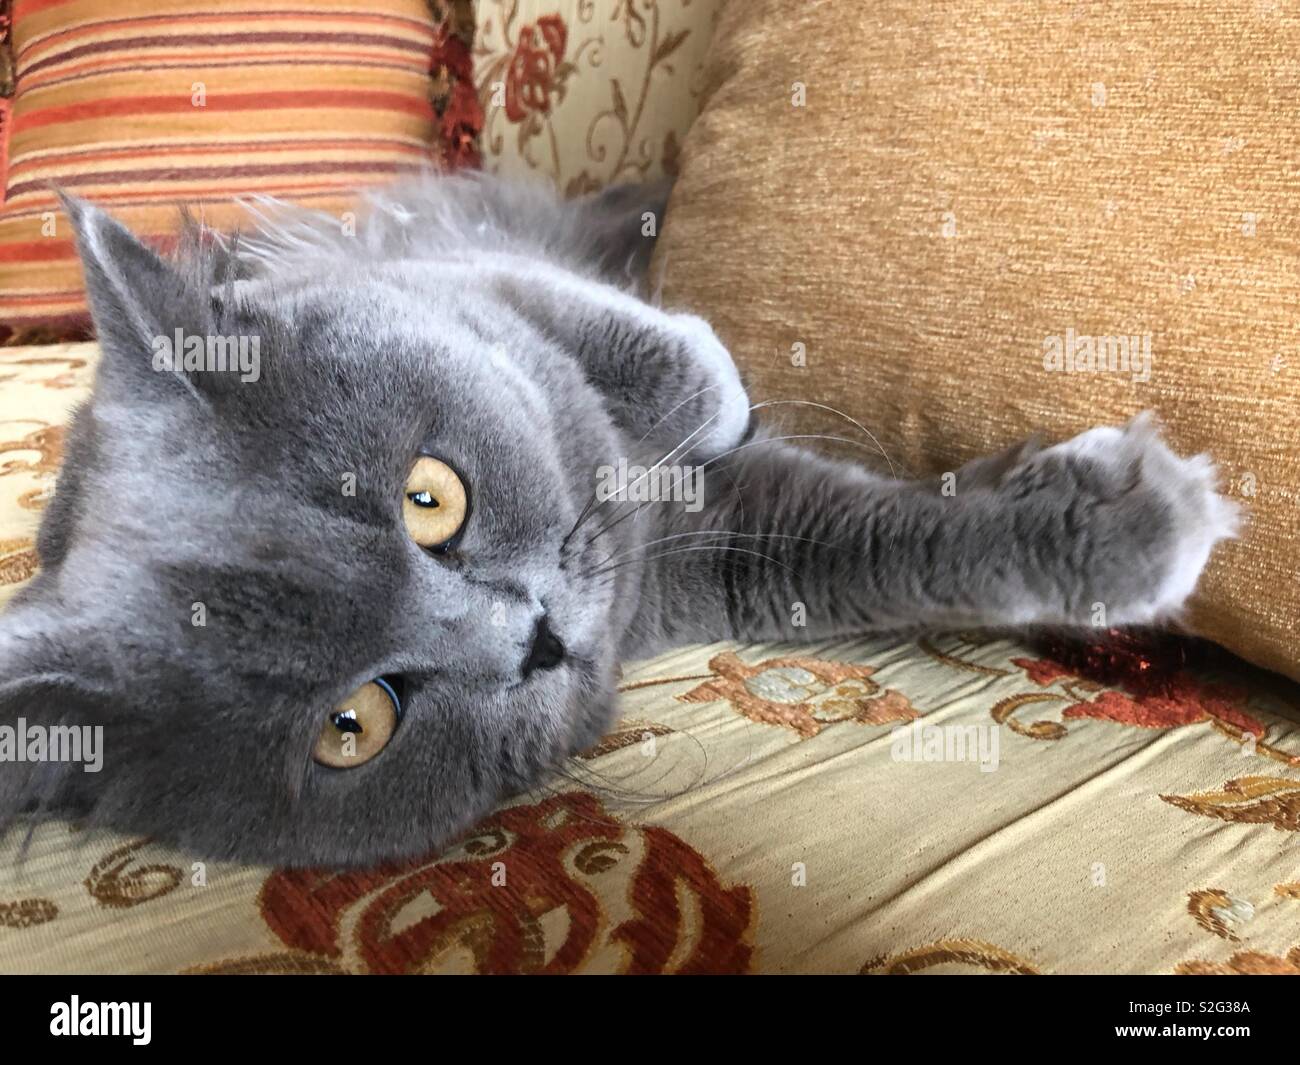 British rovinato gatto sul lettino con gli occhi gialli Foto Stock